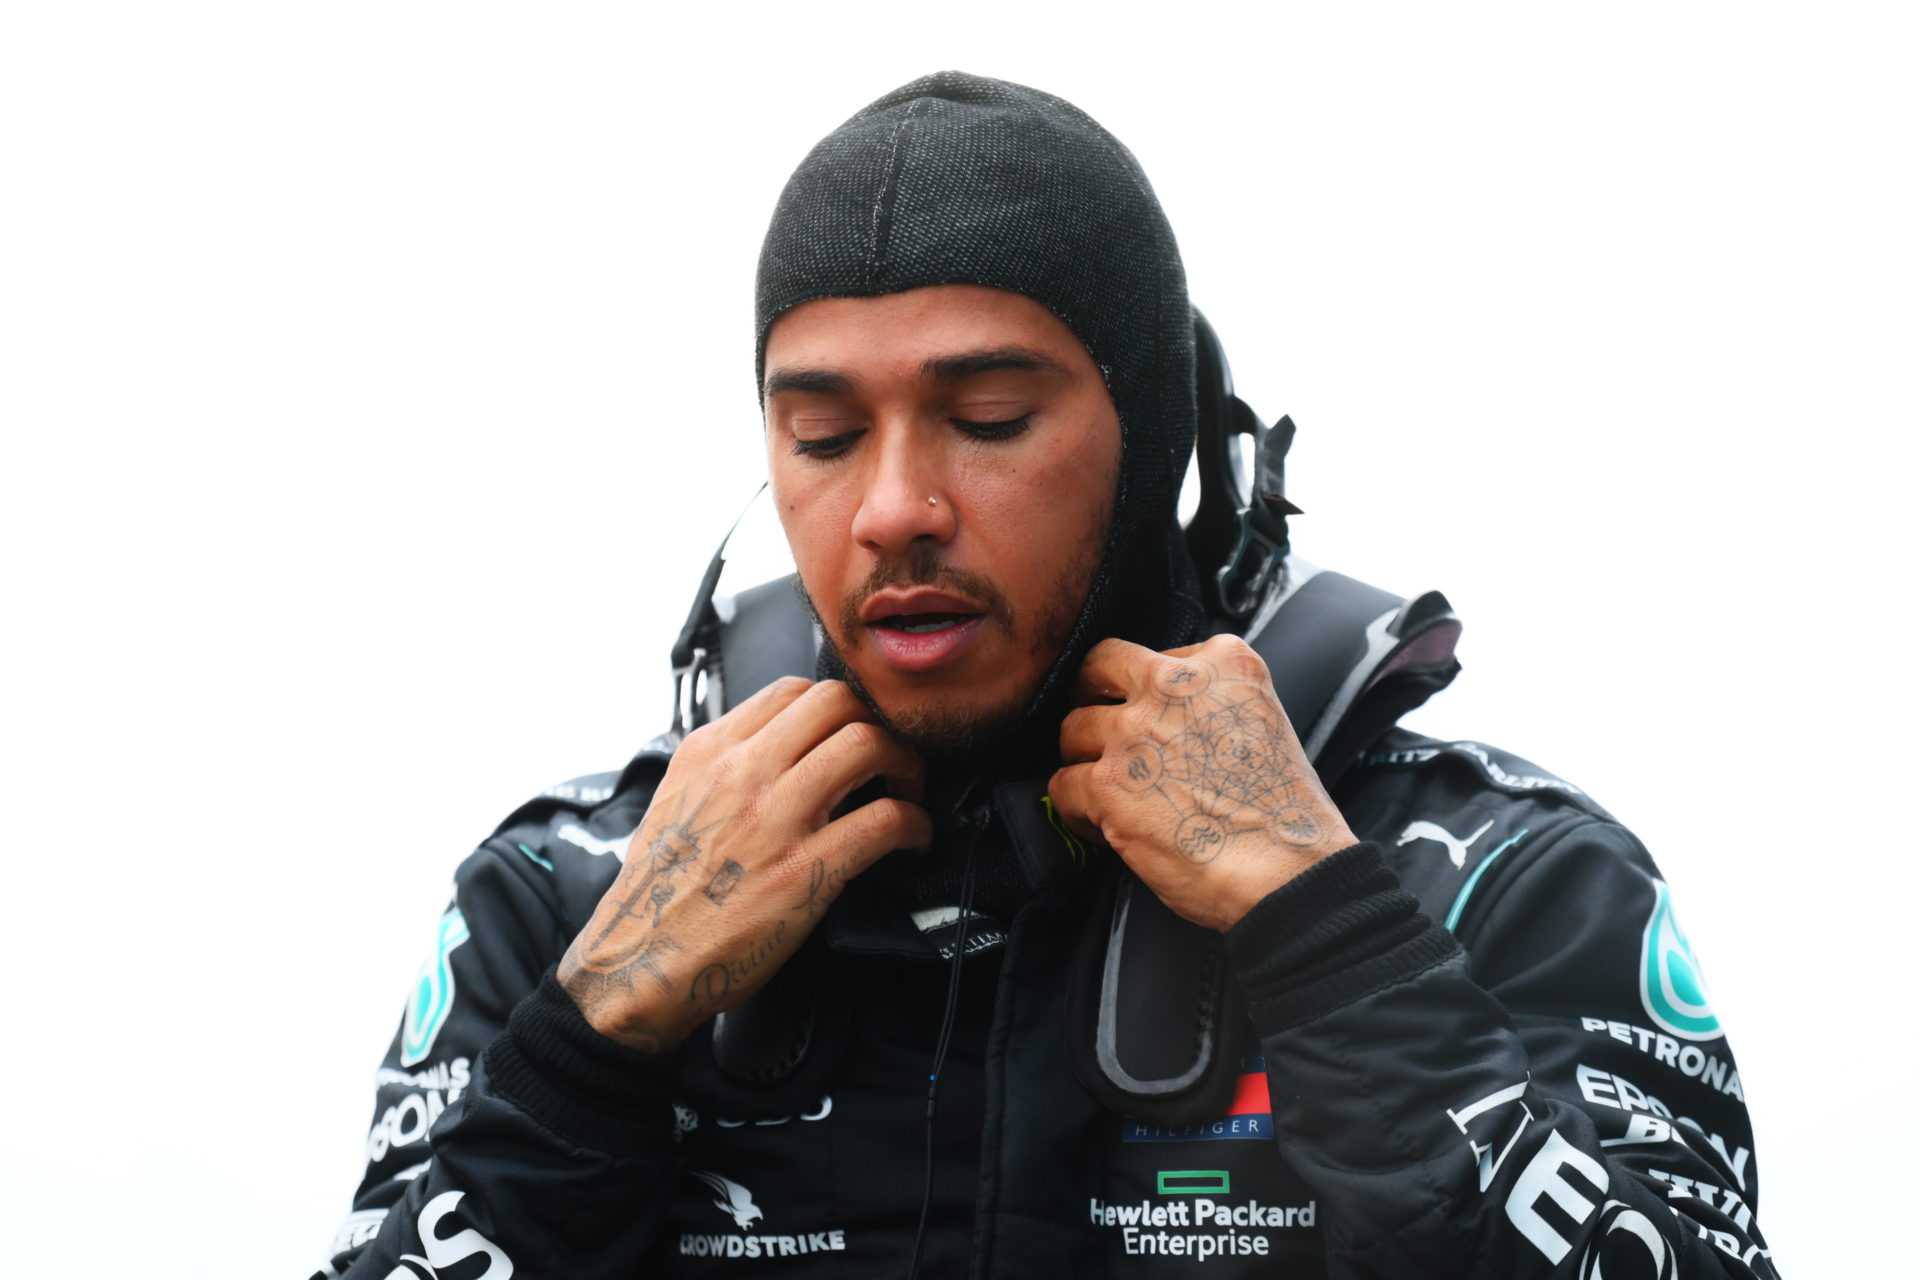 Les pensées de retraite ralentiront Lewis Hamilton: Häkkinen